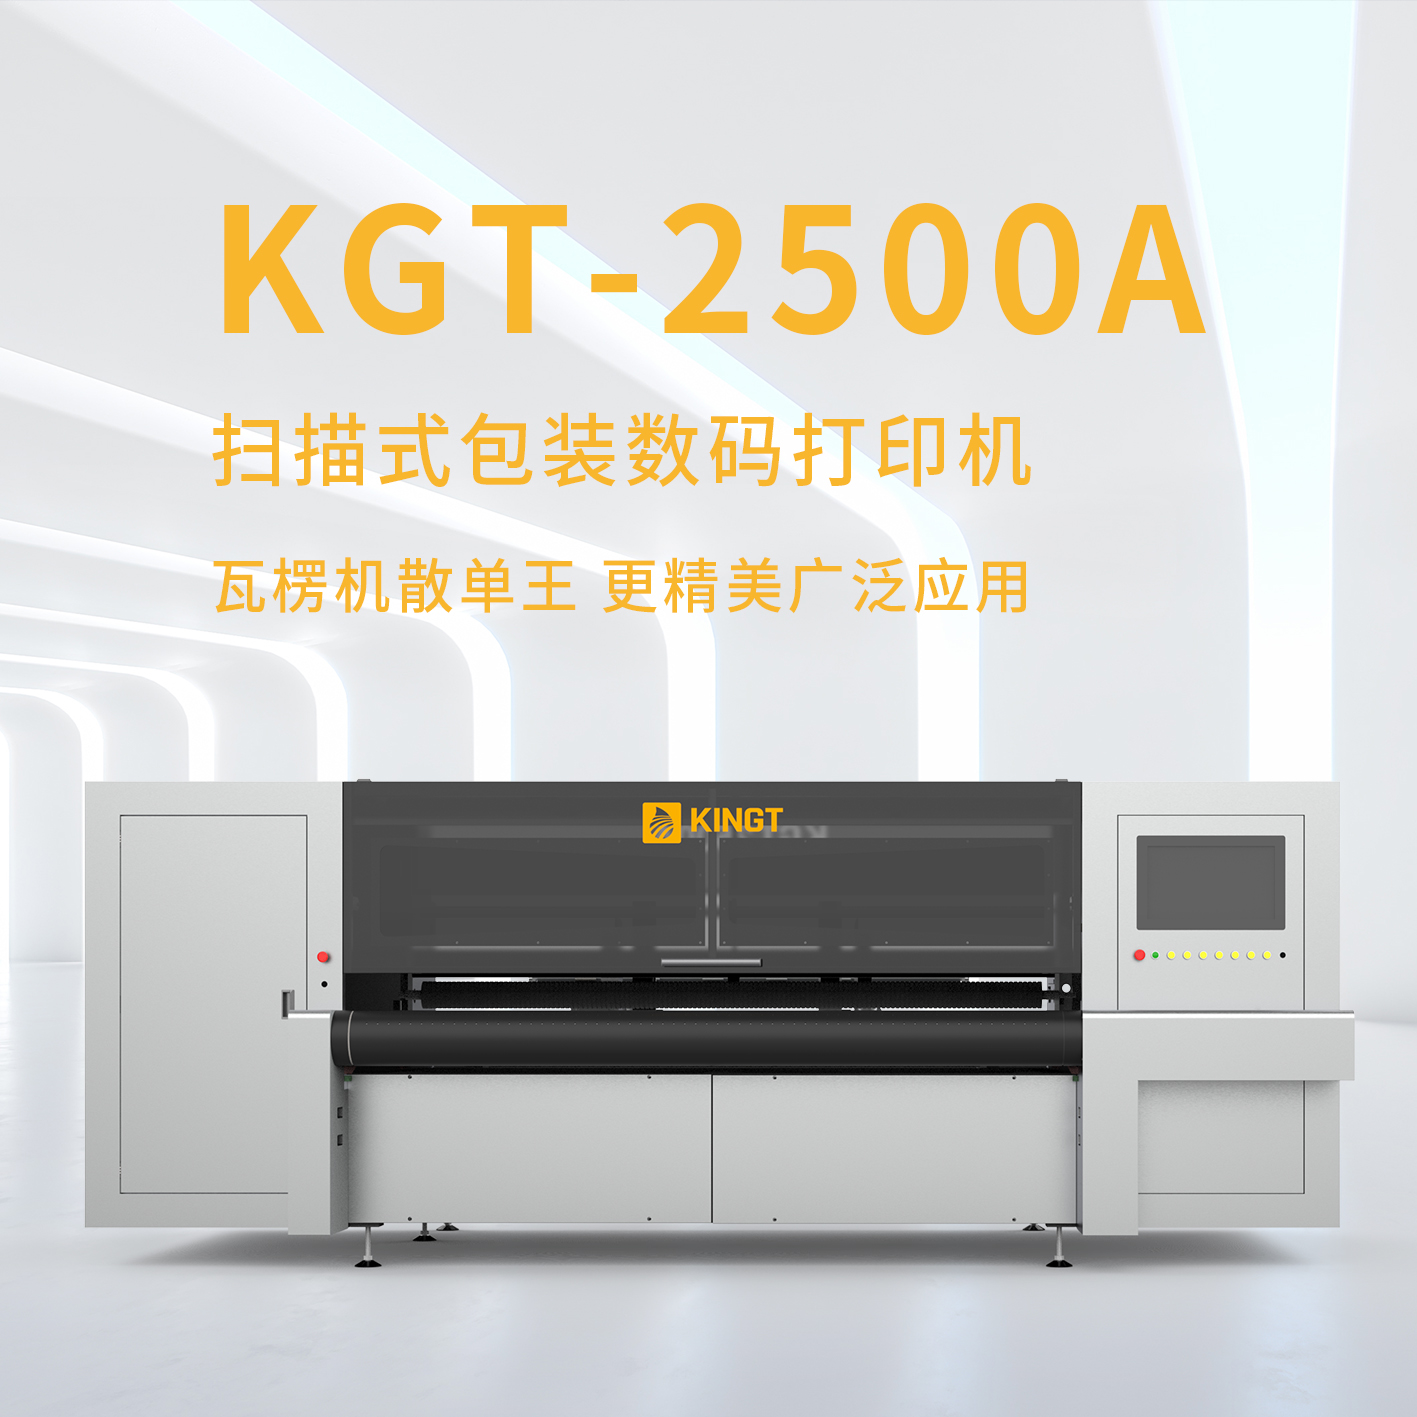 金谷田厂家KGT-2500A扫描式瓦楞印刷机